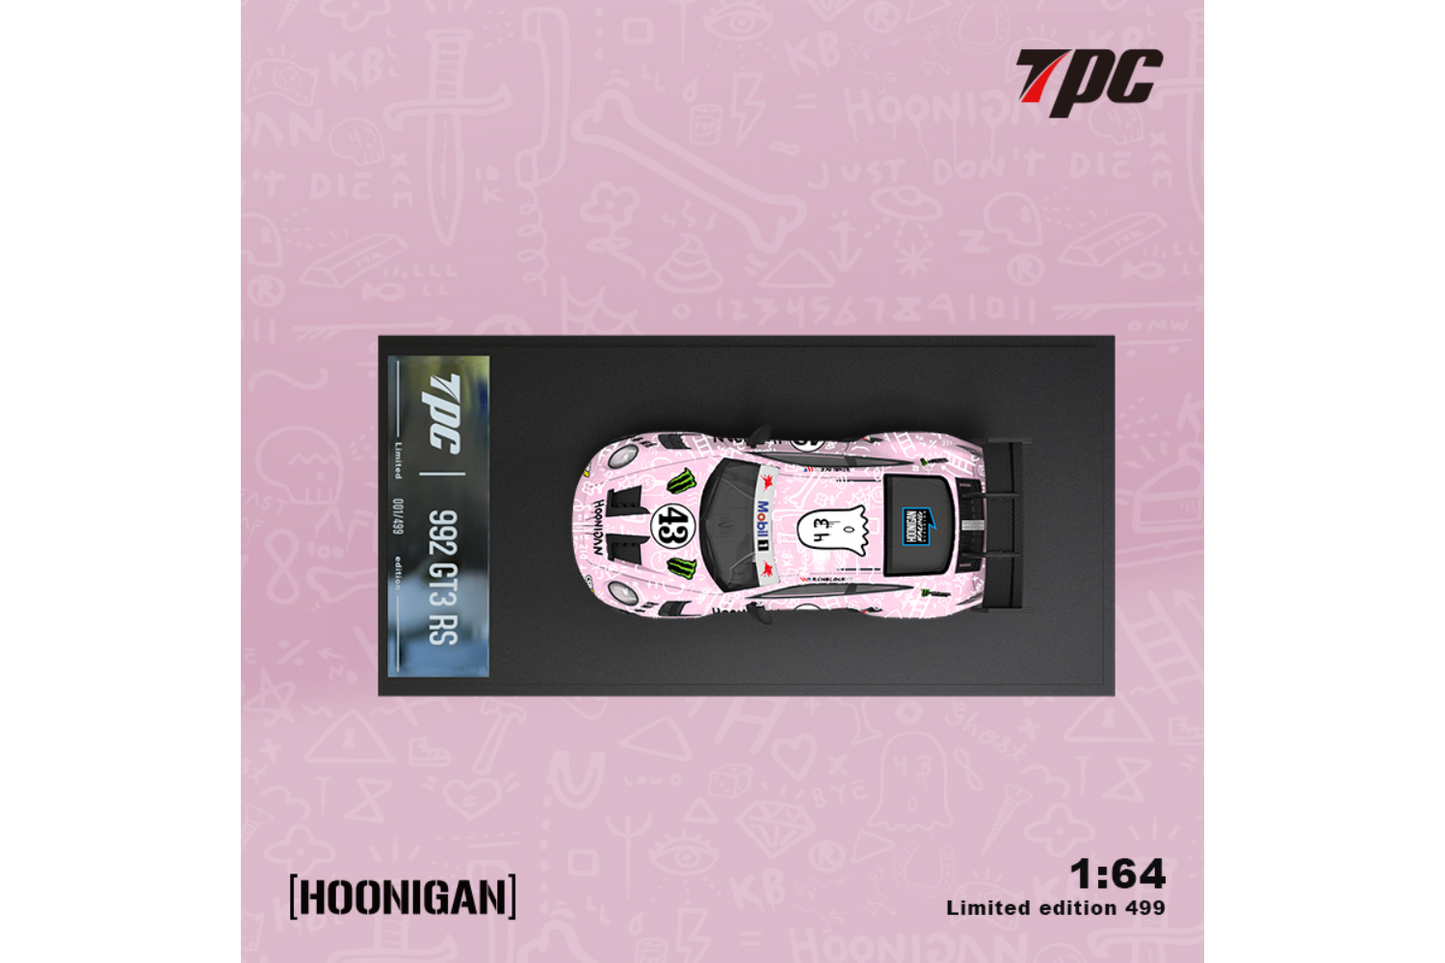 TPC 1/64 RWB VW T1 Van and Porsche 992 GT3 RS Trailer Set in Pink "Hoon" Livery